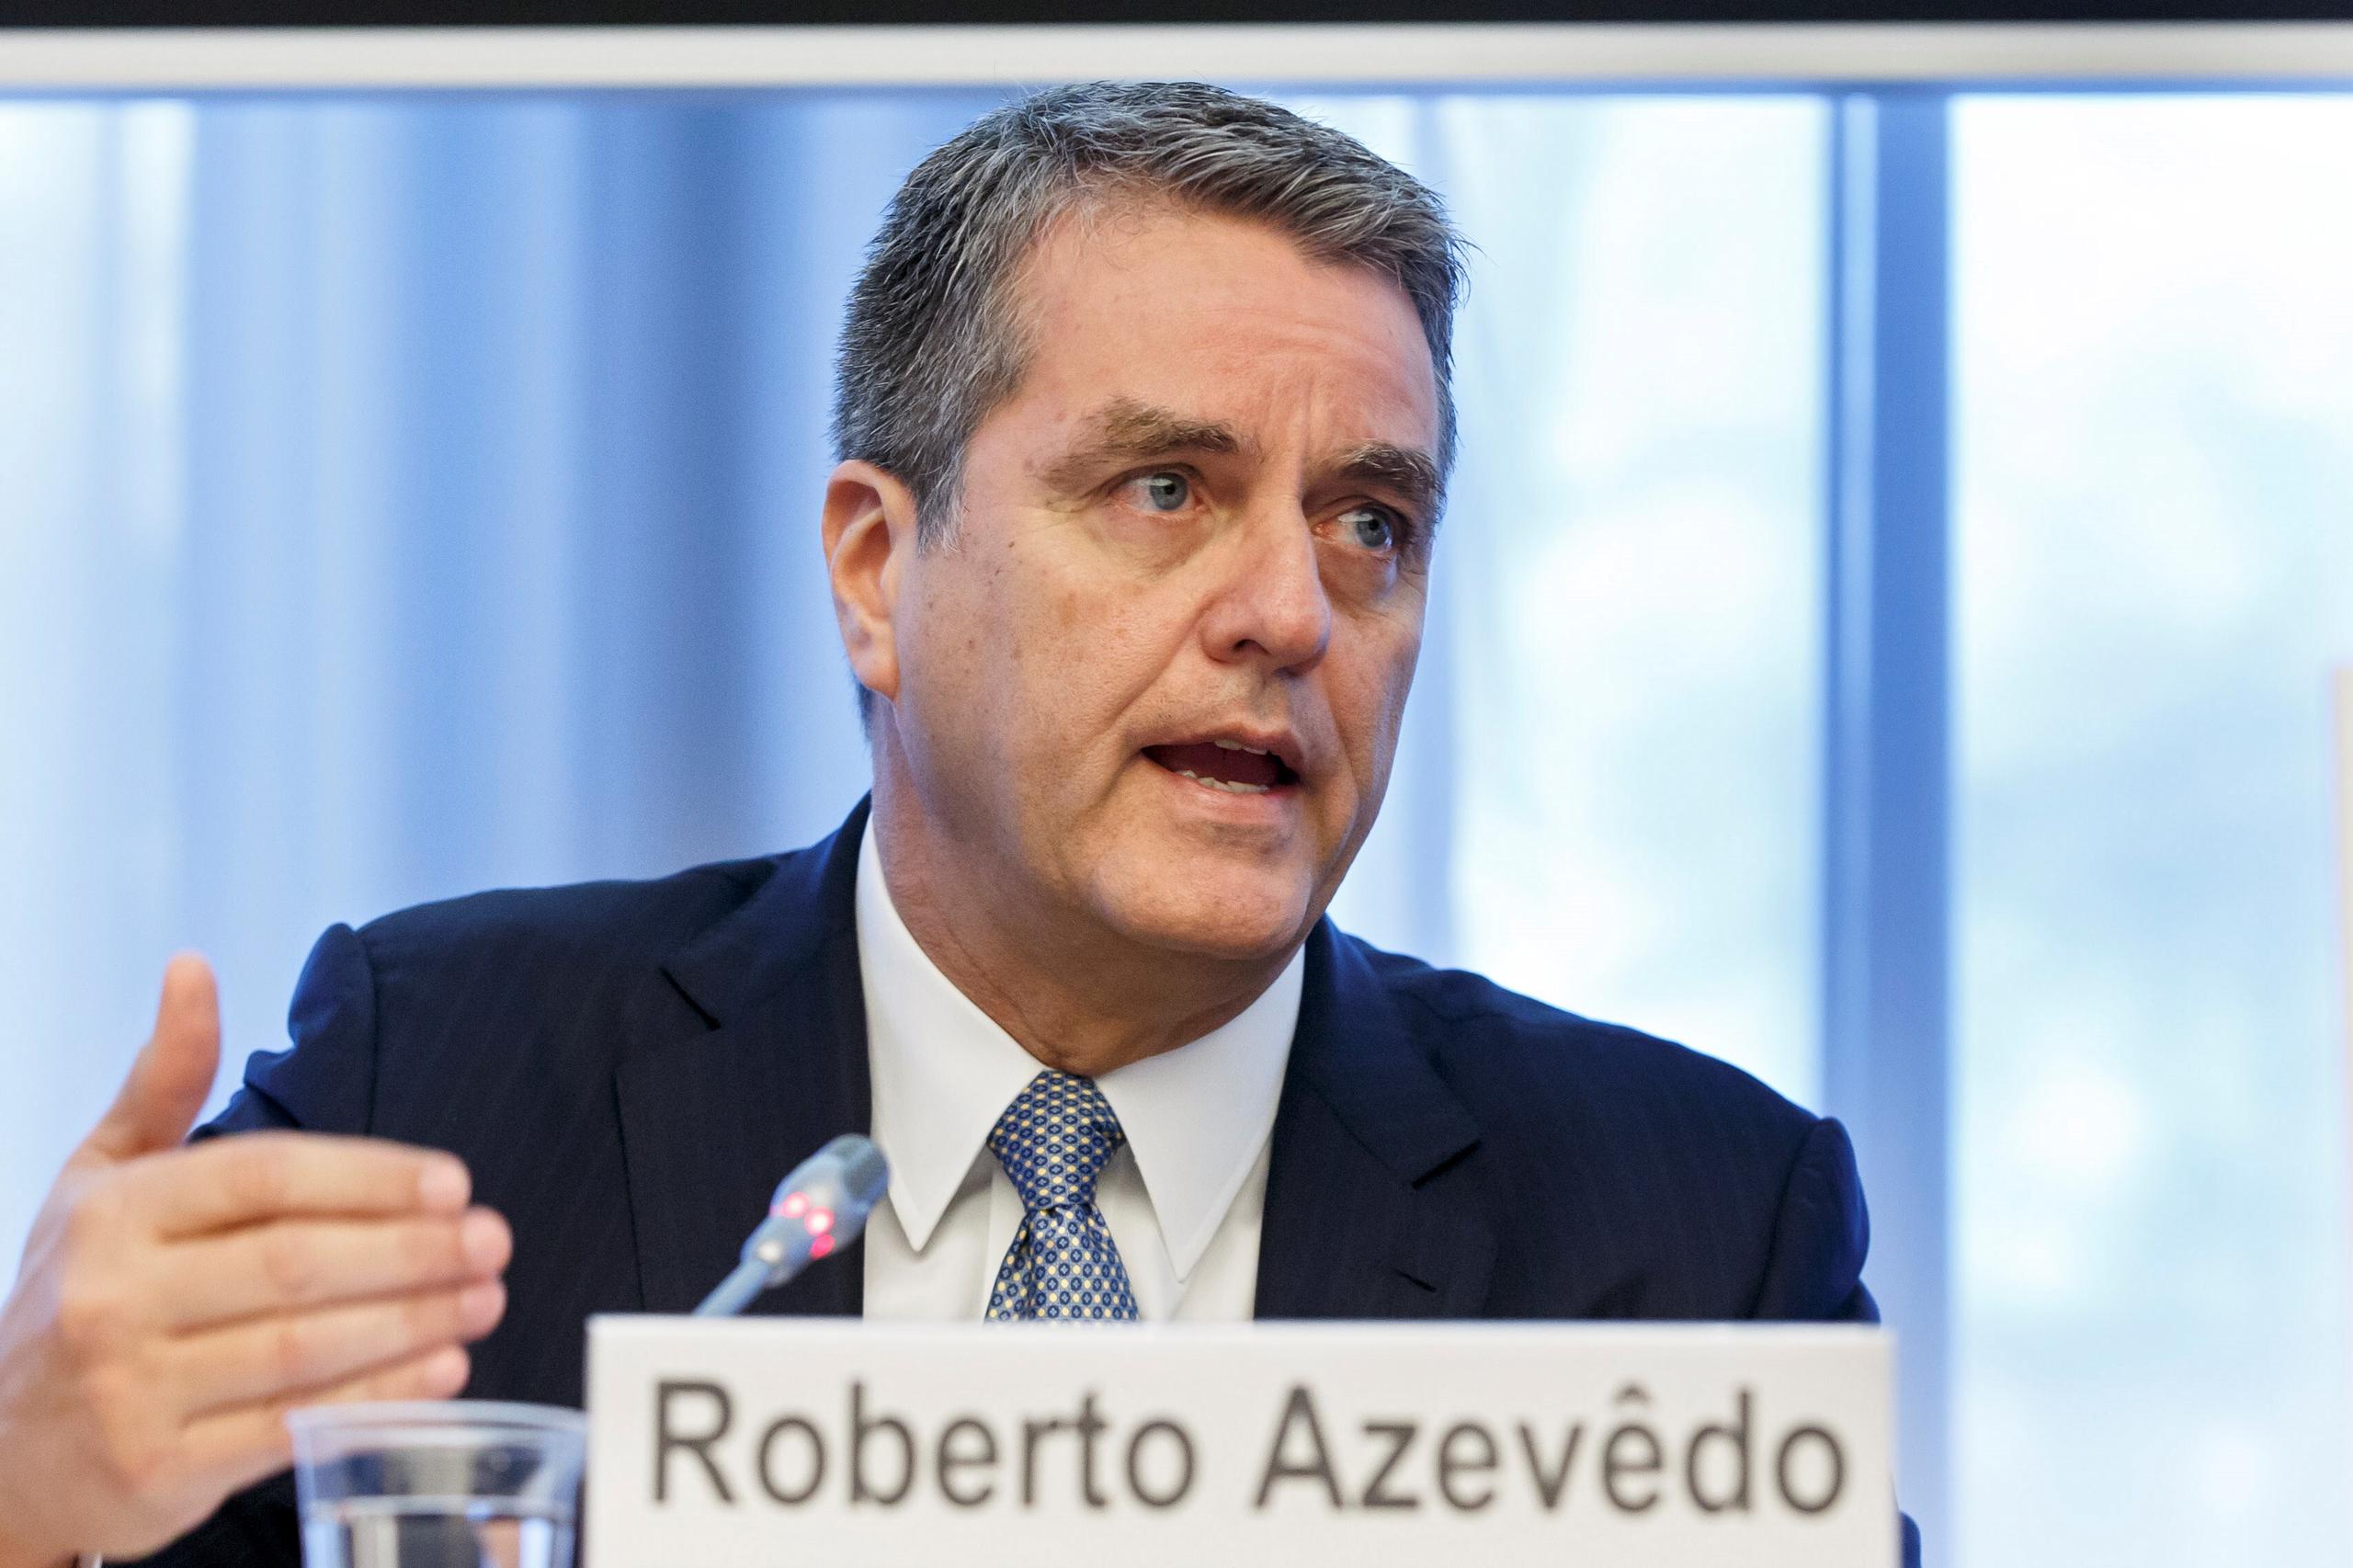 Roberto Azevedo es el director general de la Organización Mundial del Comercio.